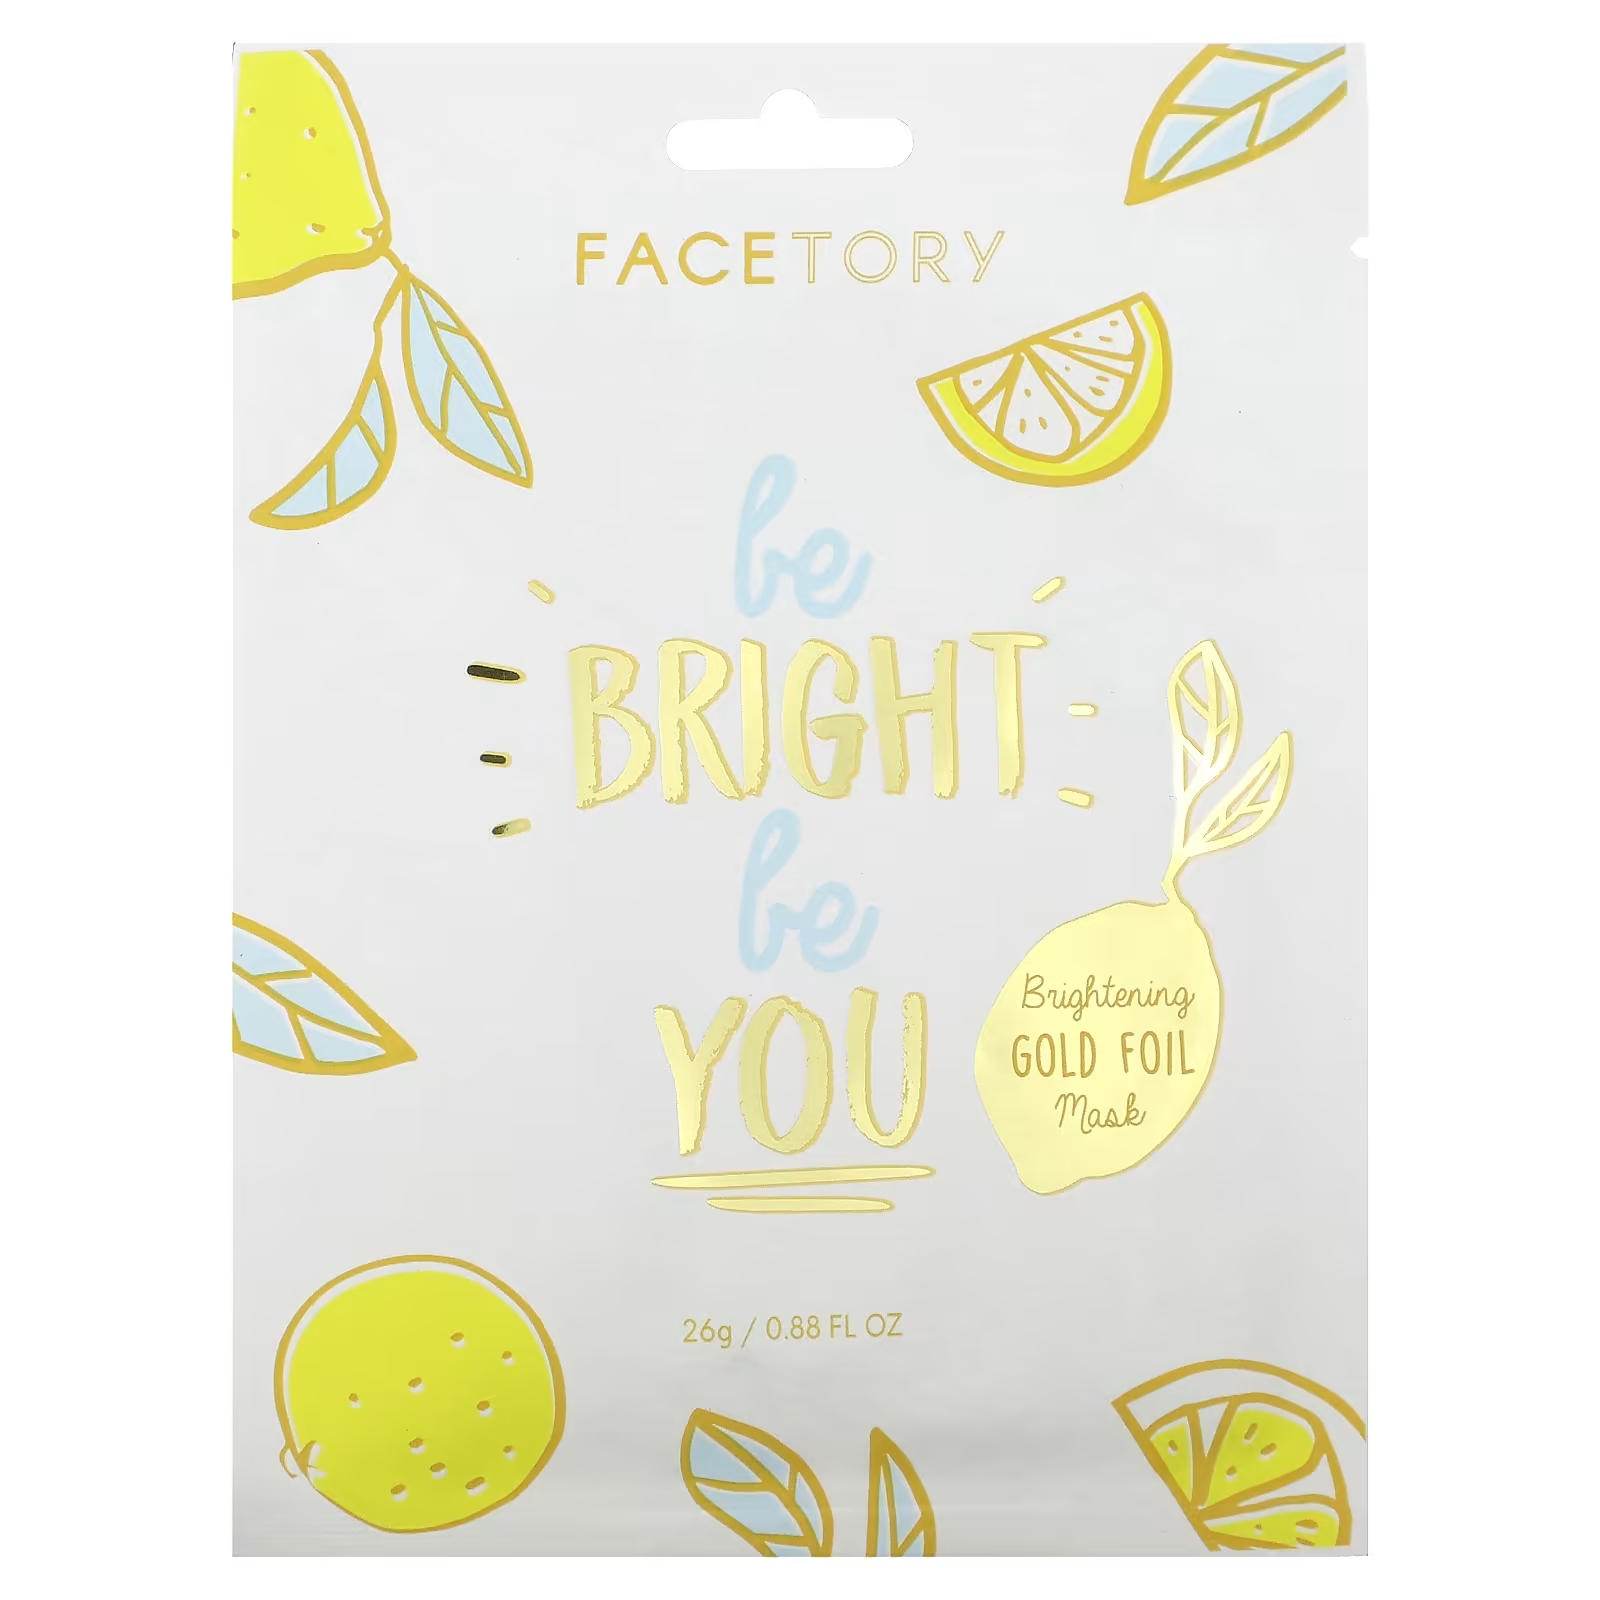 Осветляющая косметическая маска FaceTory Be Bright Be You с золотой фольгой, 26 гр. успокаивающая косметическая маска facetory sun bae 22 гр